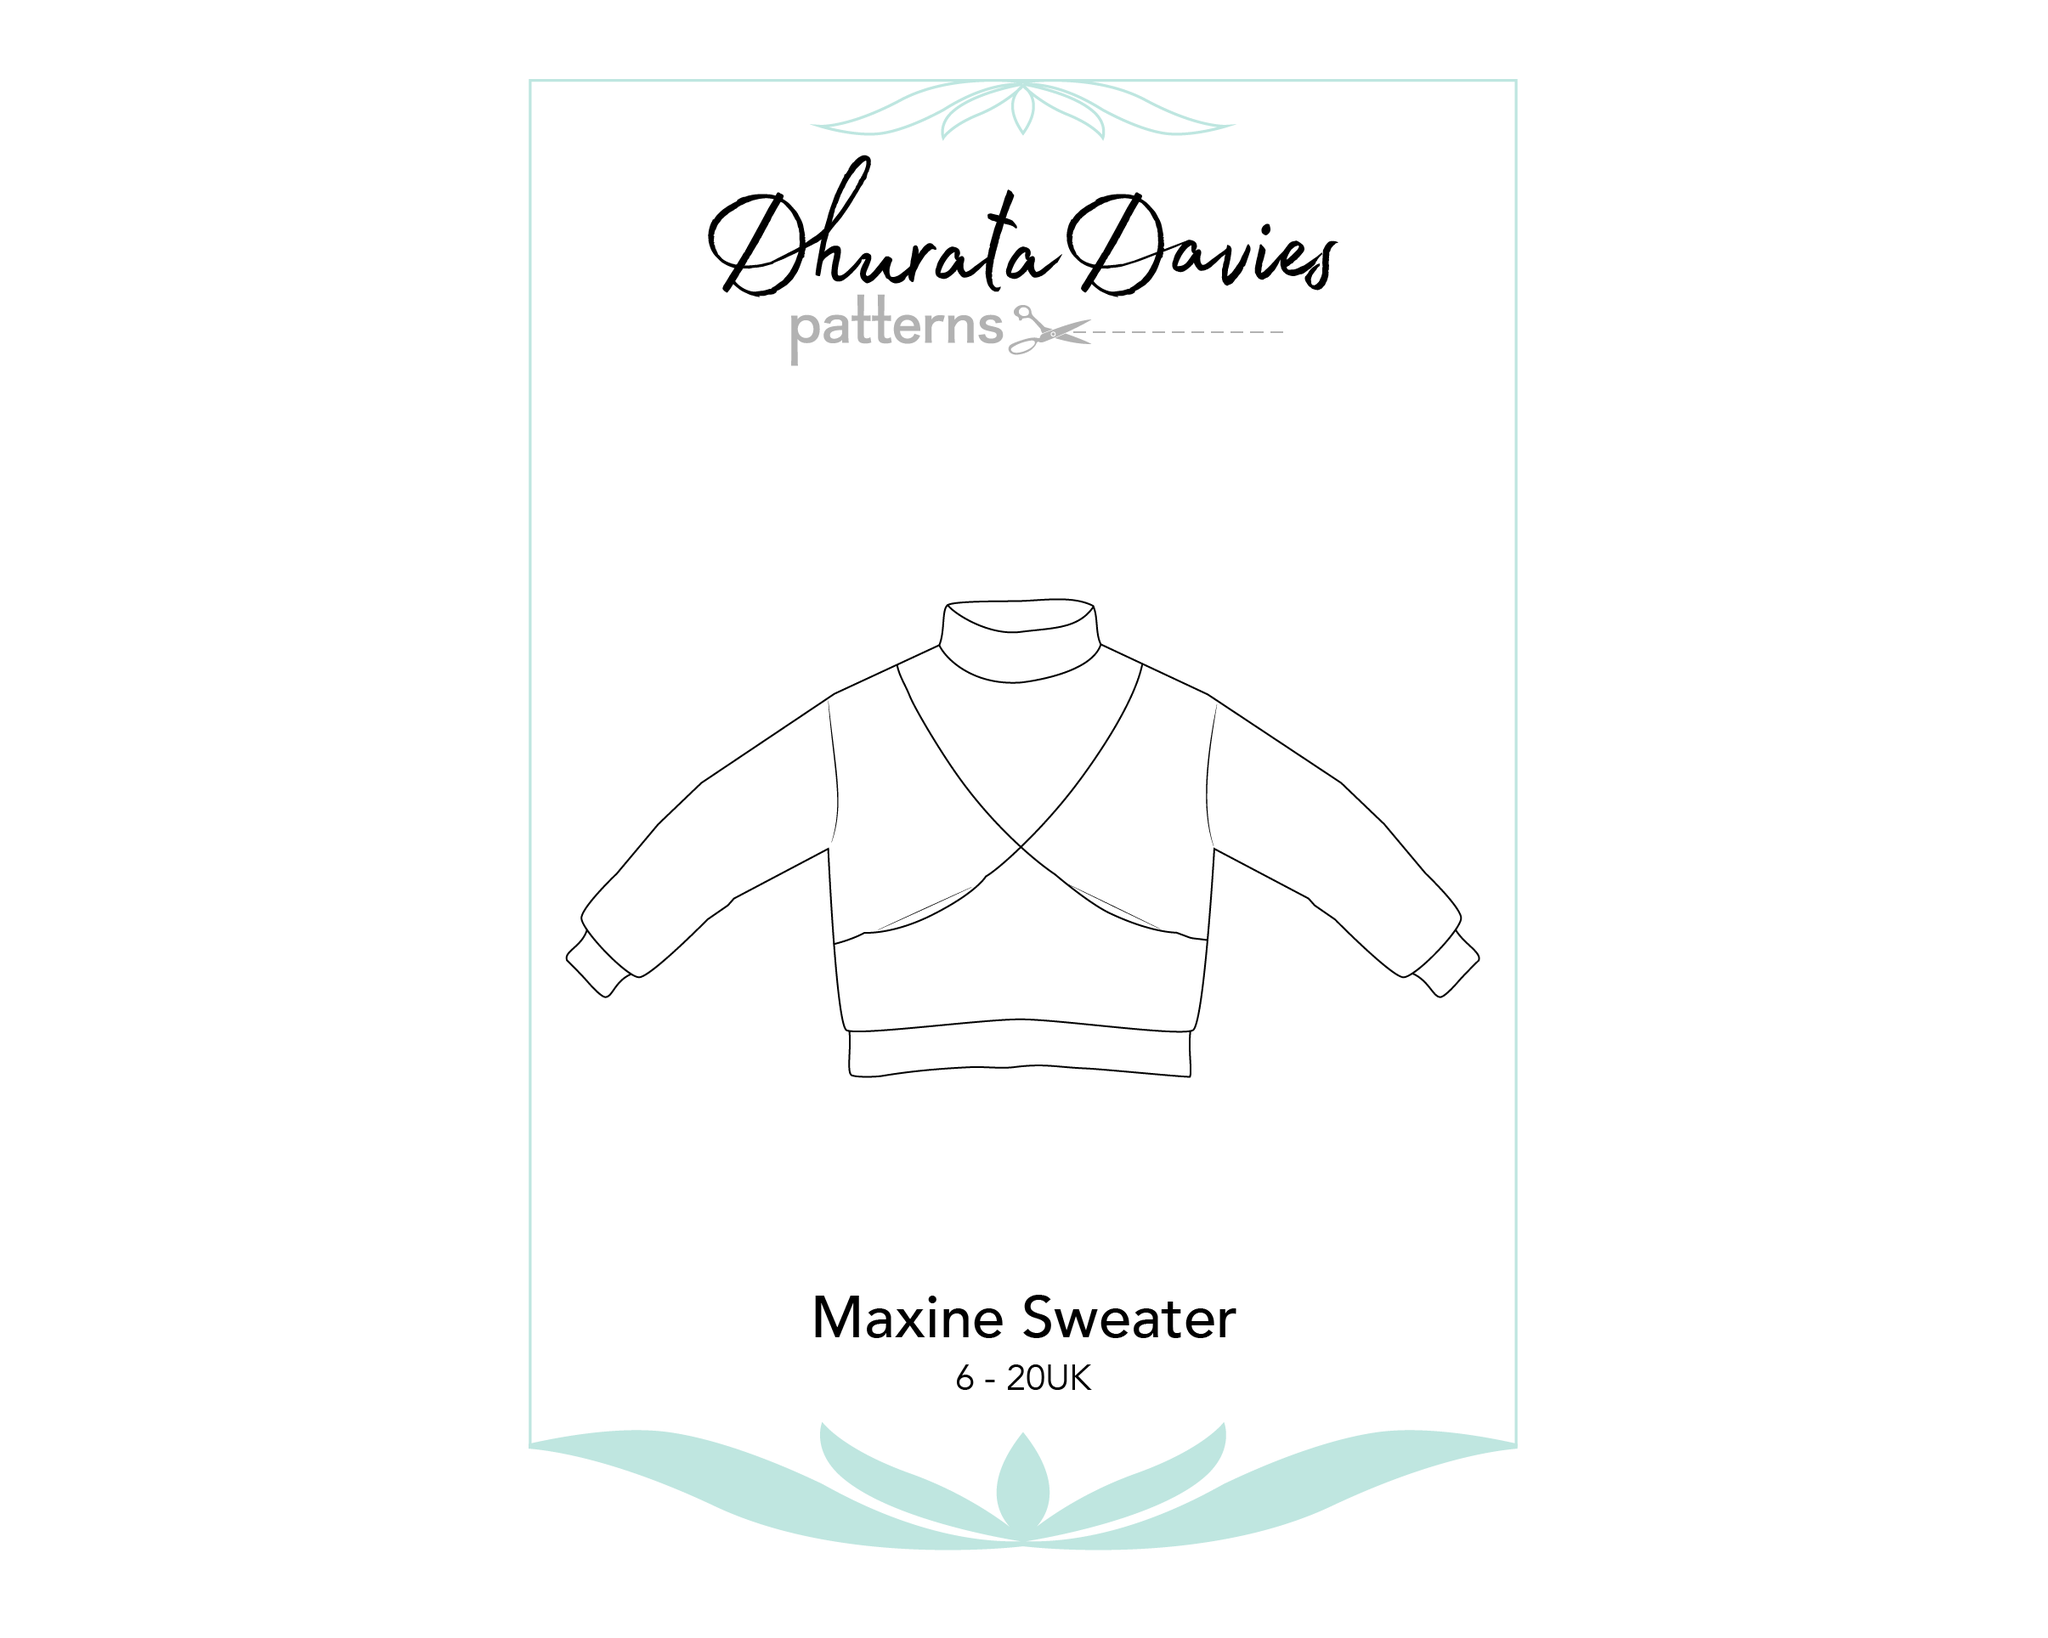 Dhurata Davies Patterns Maxine Sweater